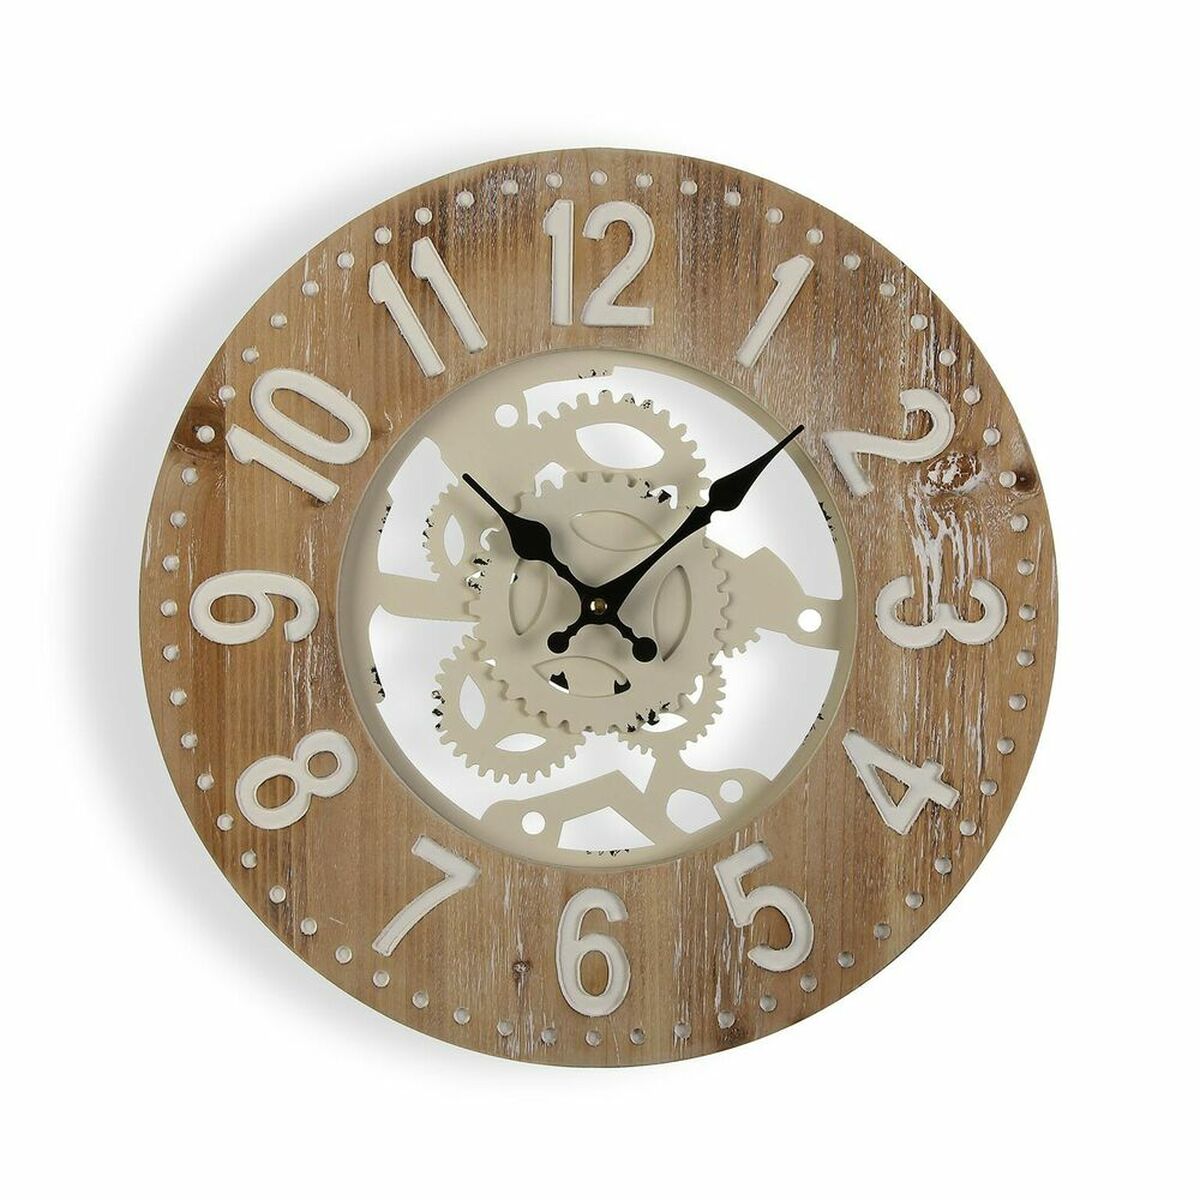 Wall clock Versa 40 x 4.5 x 40 cm Metal Wood MDF